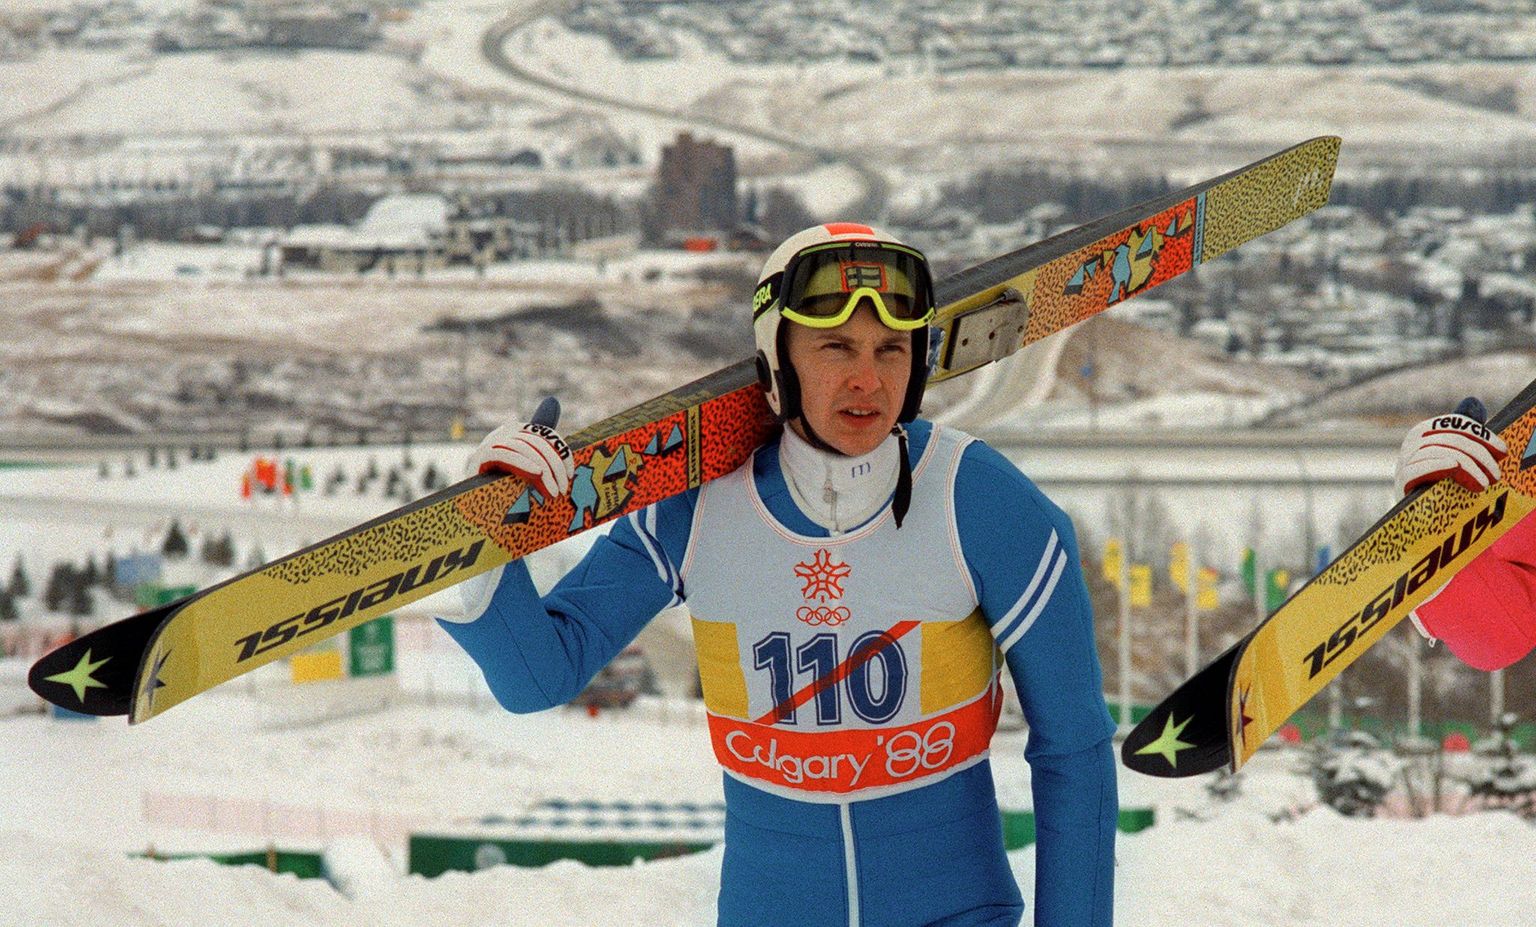 Soome suusahüppaja Matti Nykänen tuli 1988. aastal Calgarys kolmekordseks olümpiavõitjaks.